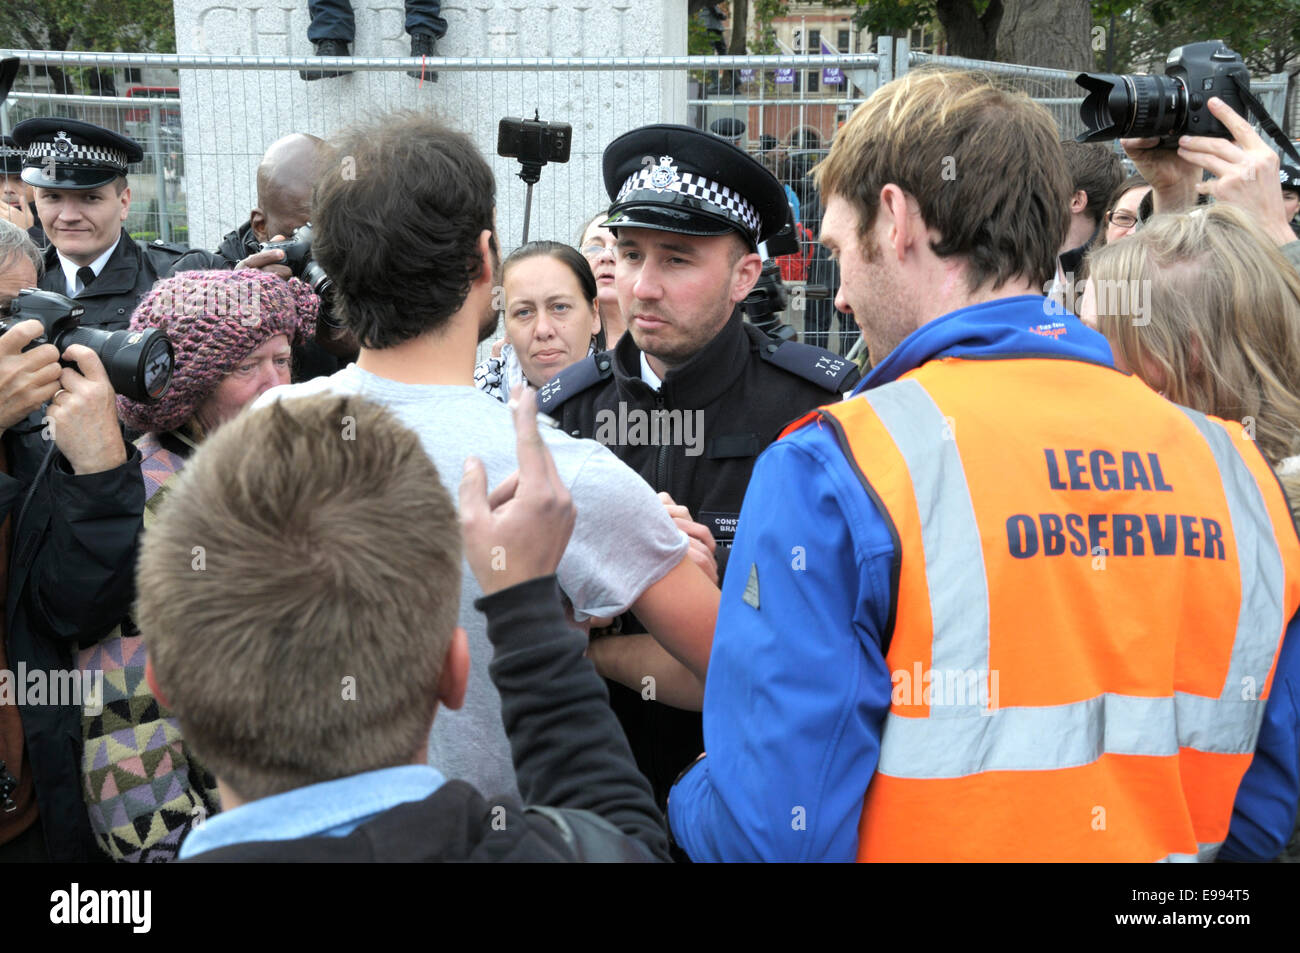 Londra, Regno Unito. 22 ottobre, 2014. Occupare Londra protester "zoccolo Guy' rimane sul plinto di Winston Churchill statua in piazza del Parlamento - la polizia arresta un uomo per il lancio di cibo per lui. Foto Stock